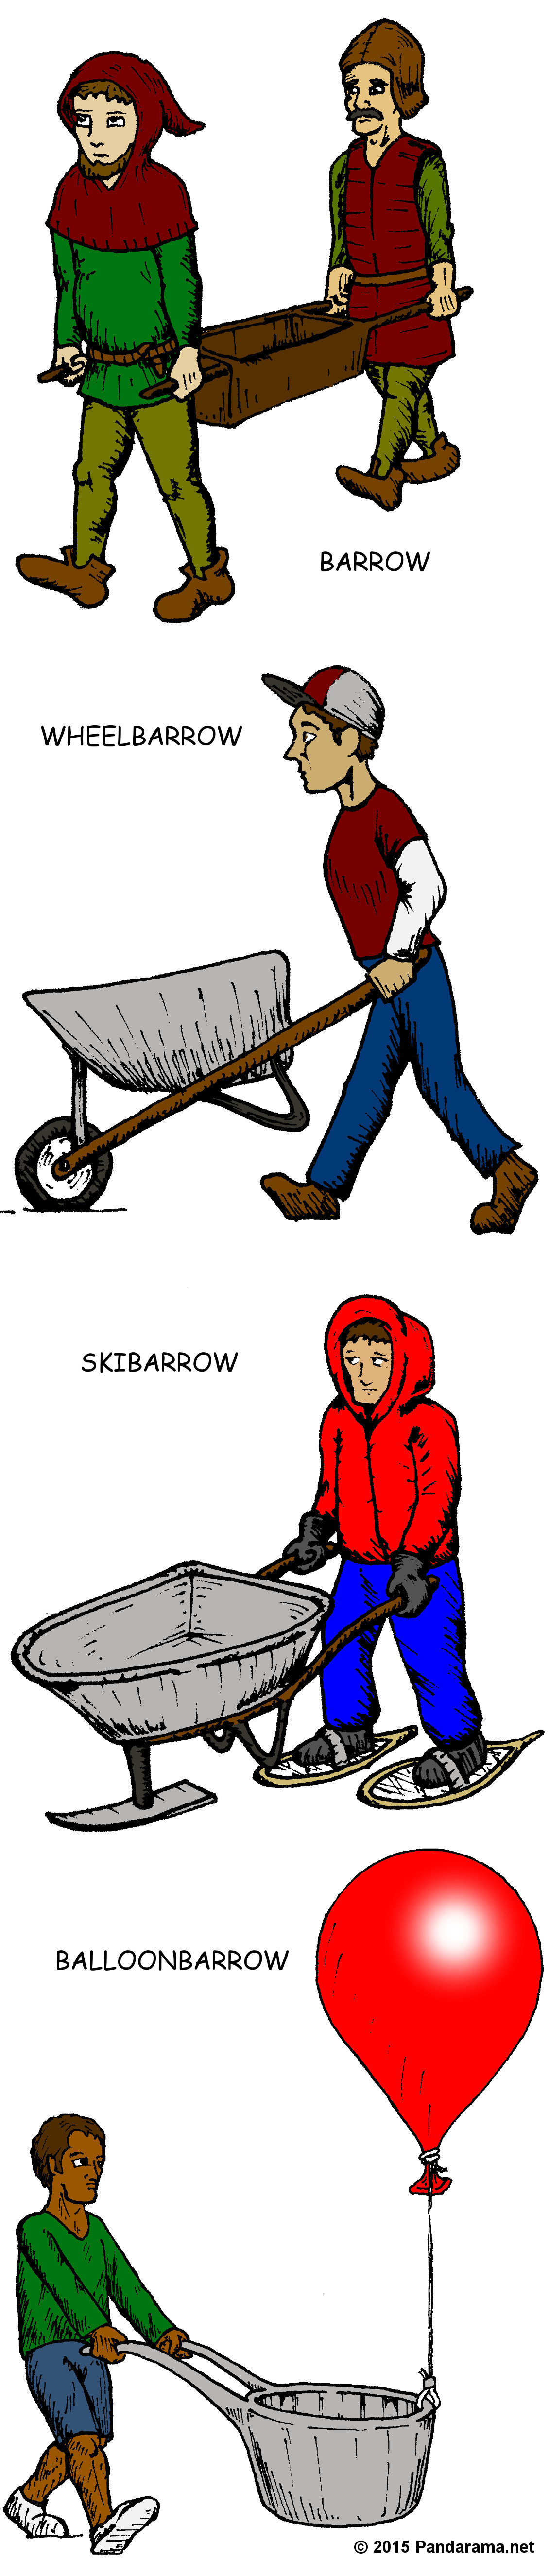 Pandarama.net Pandarama cartoon of barrow, wheelbarrow, skibarrow, balloonbarrow